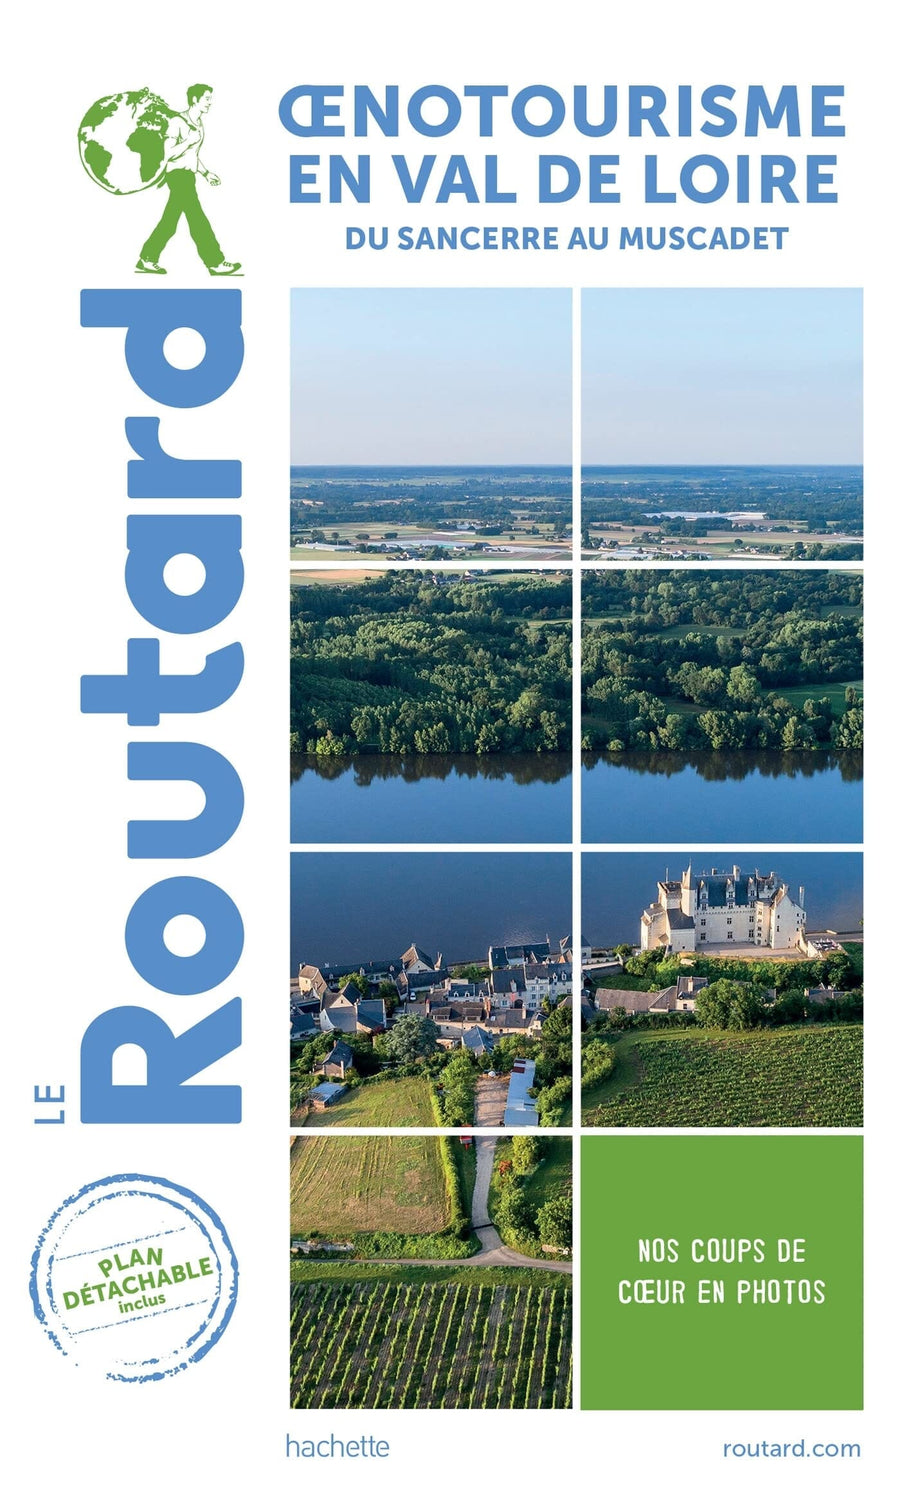 Guide du Routard - Oenotourisme en Val de Loire | Hachette guide de voyage Hachette 